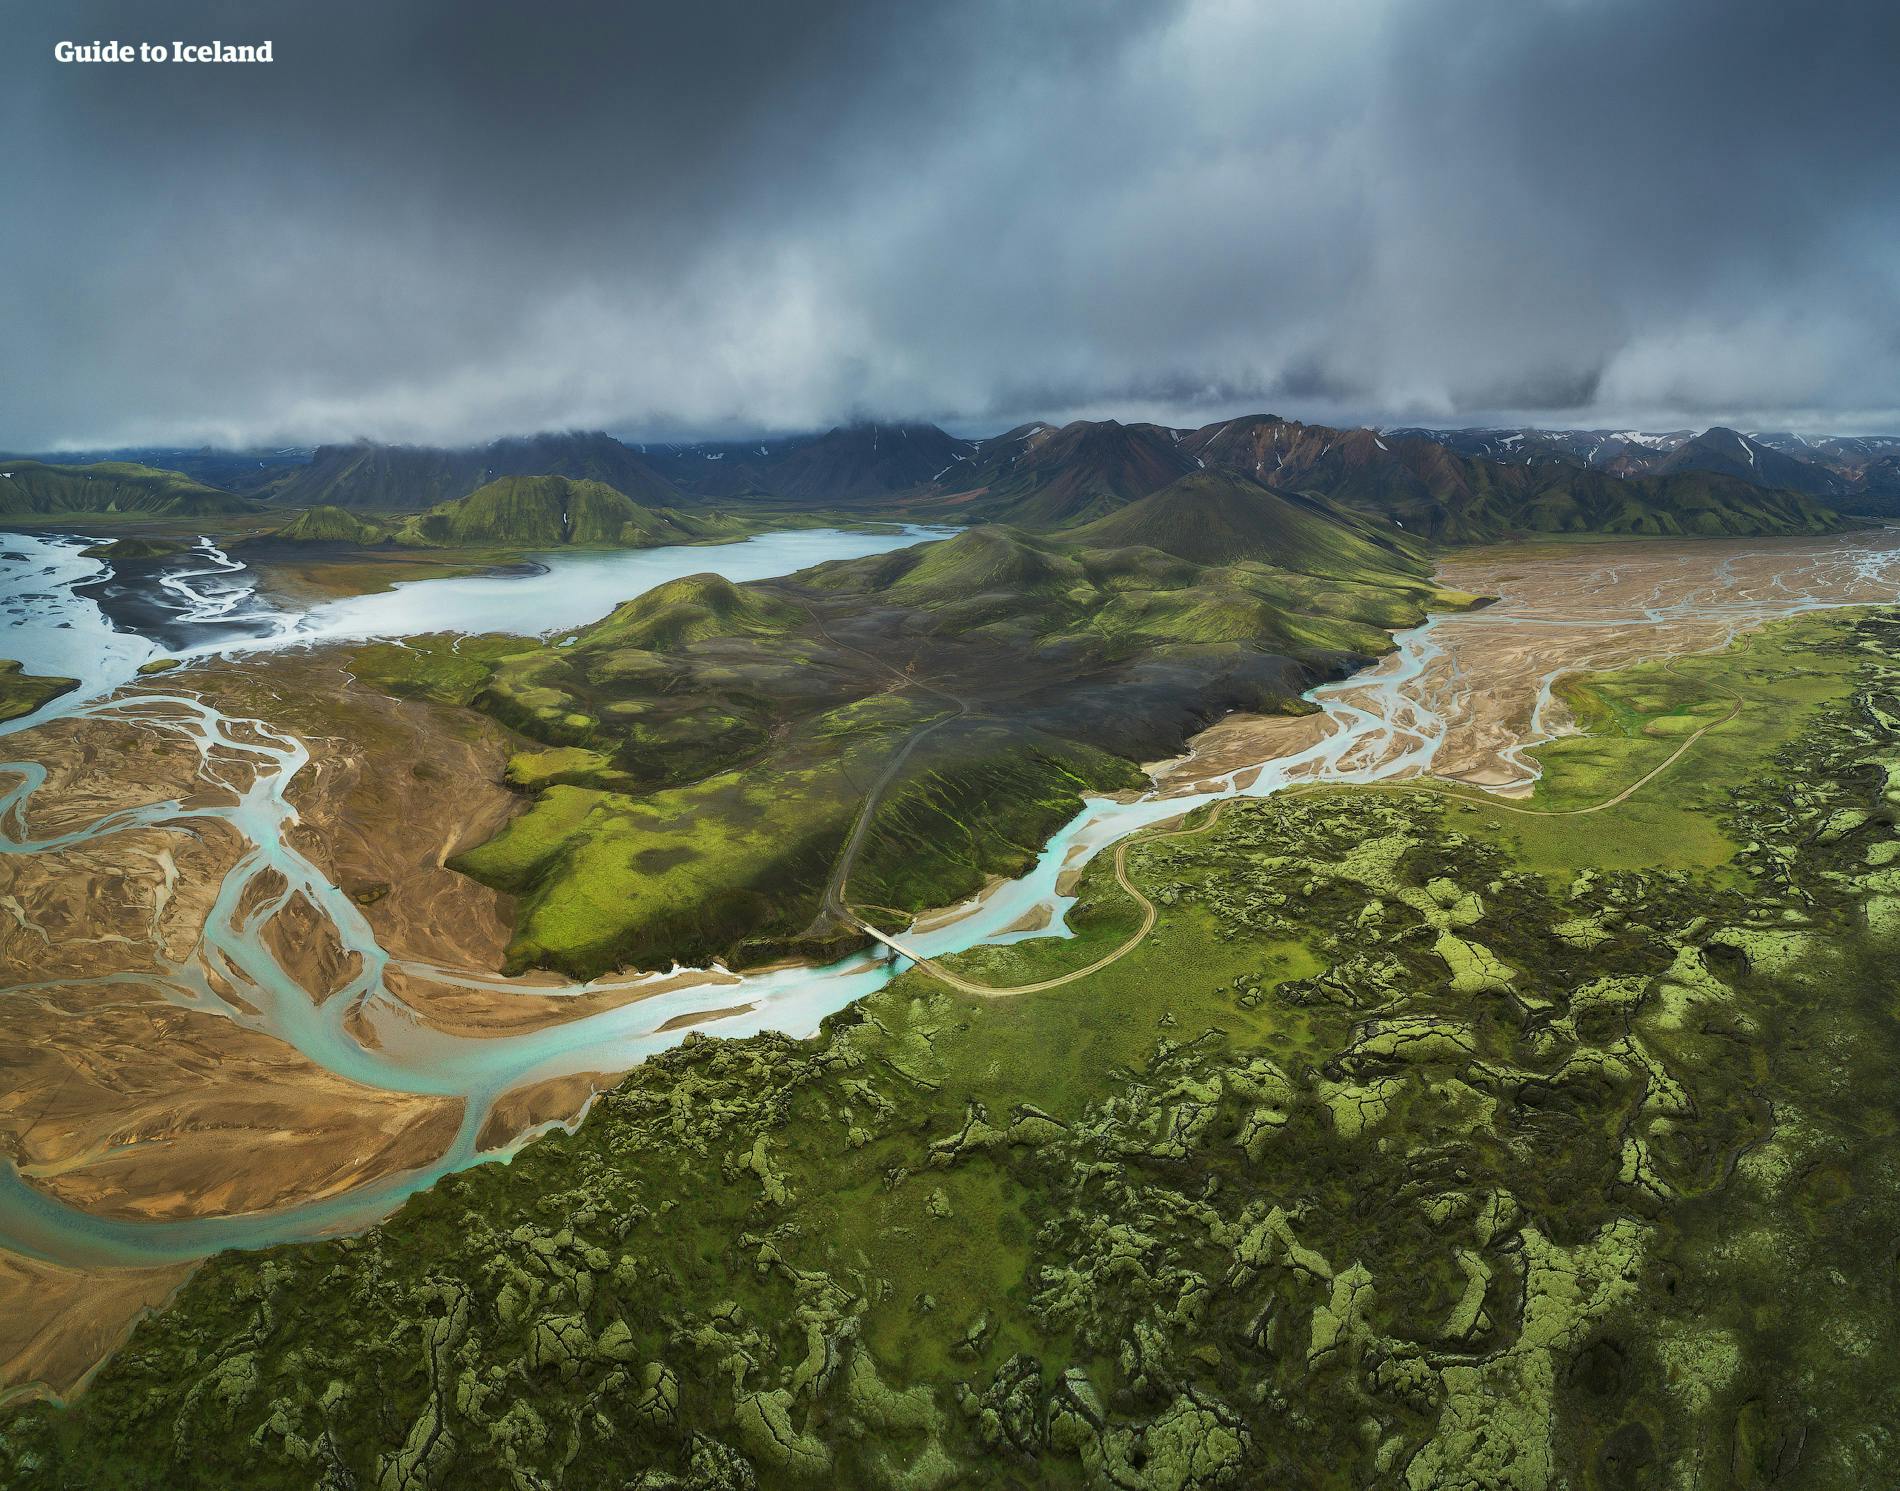 Un paesaggio vulcanico negli altopiani islandesi.